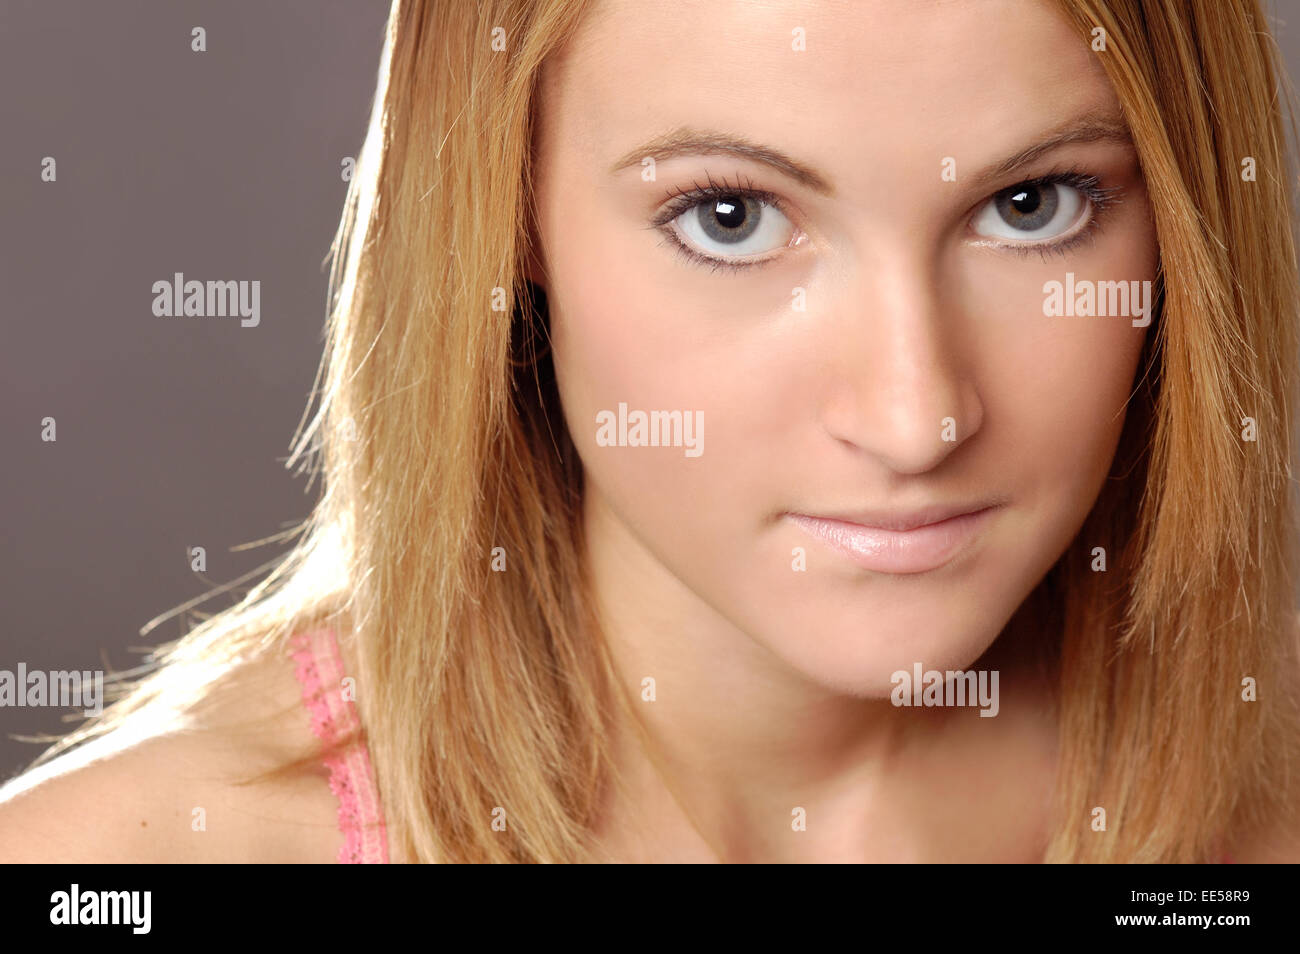 Dieses Foto zeigt eine junge Frau mit klare Haut und natürlich aussehendes Make-up. Sie macht Blickkontakt mit dem Betrachter Stockfoto